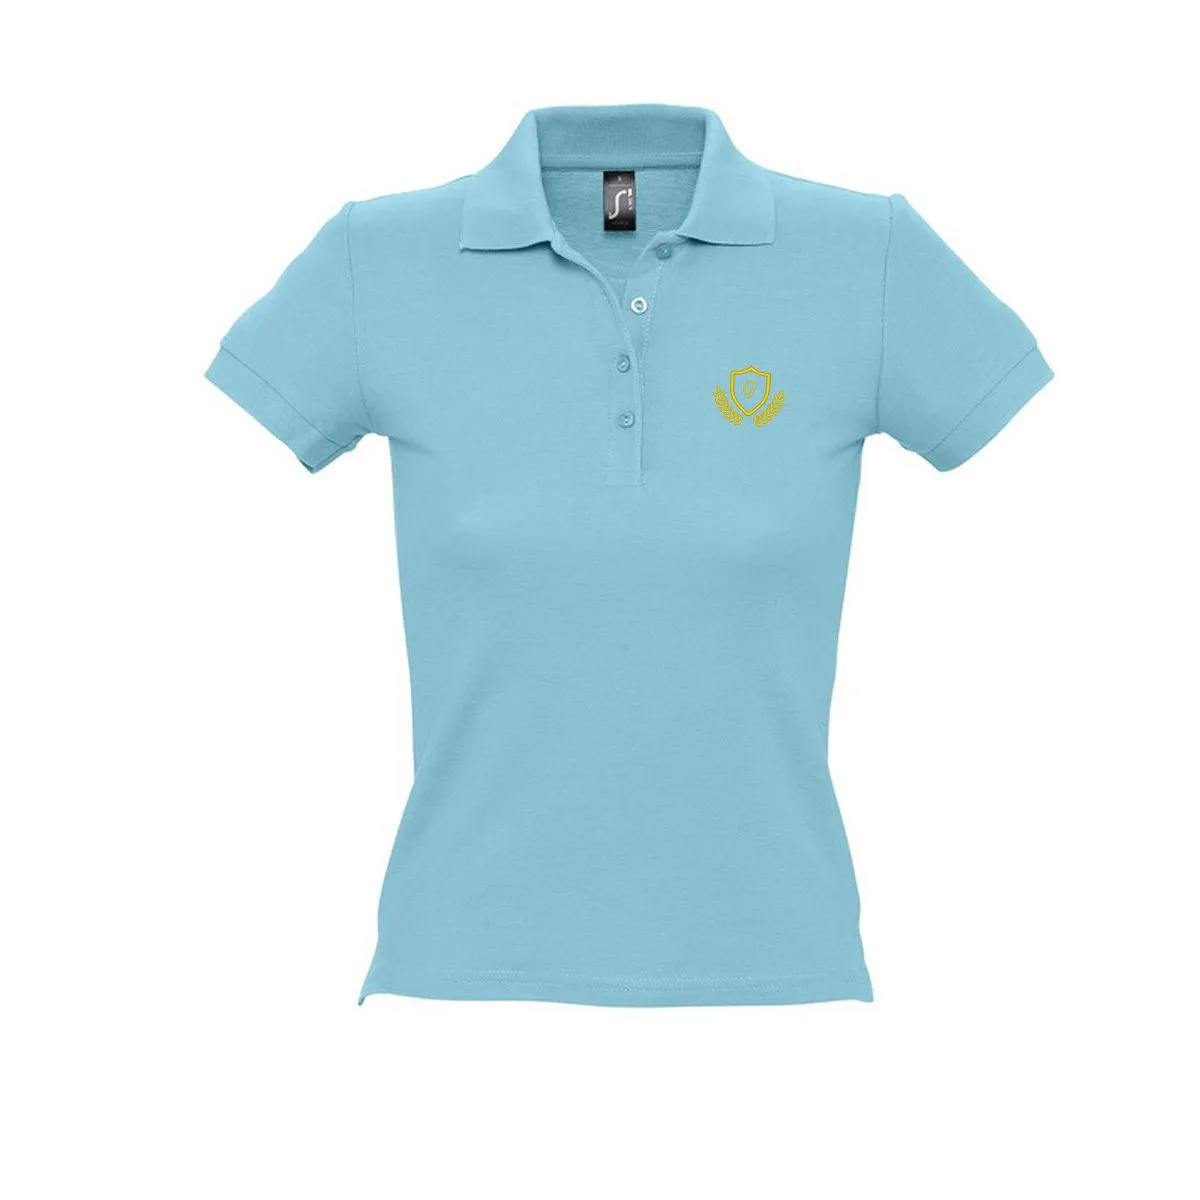 Personalisierbares Poloshirt für Frauen - Hellblau - S